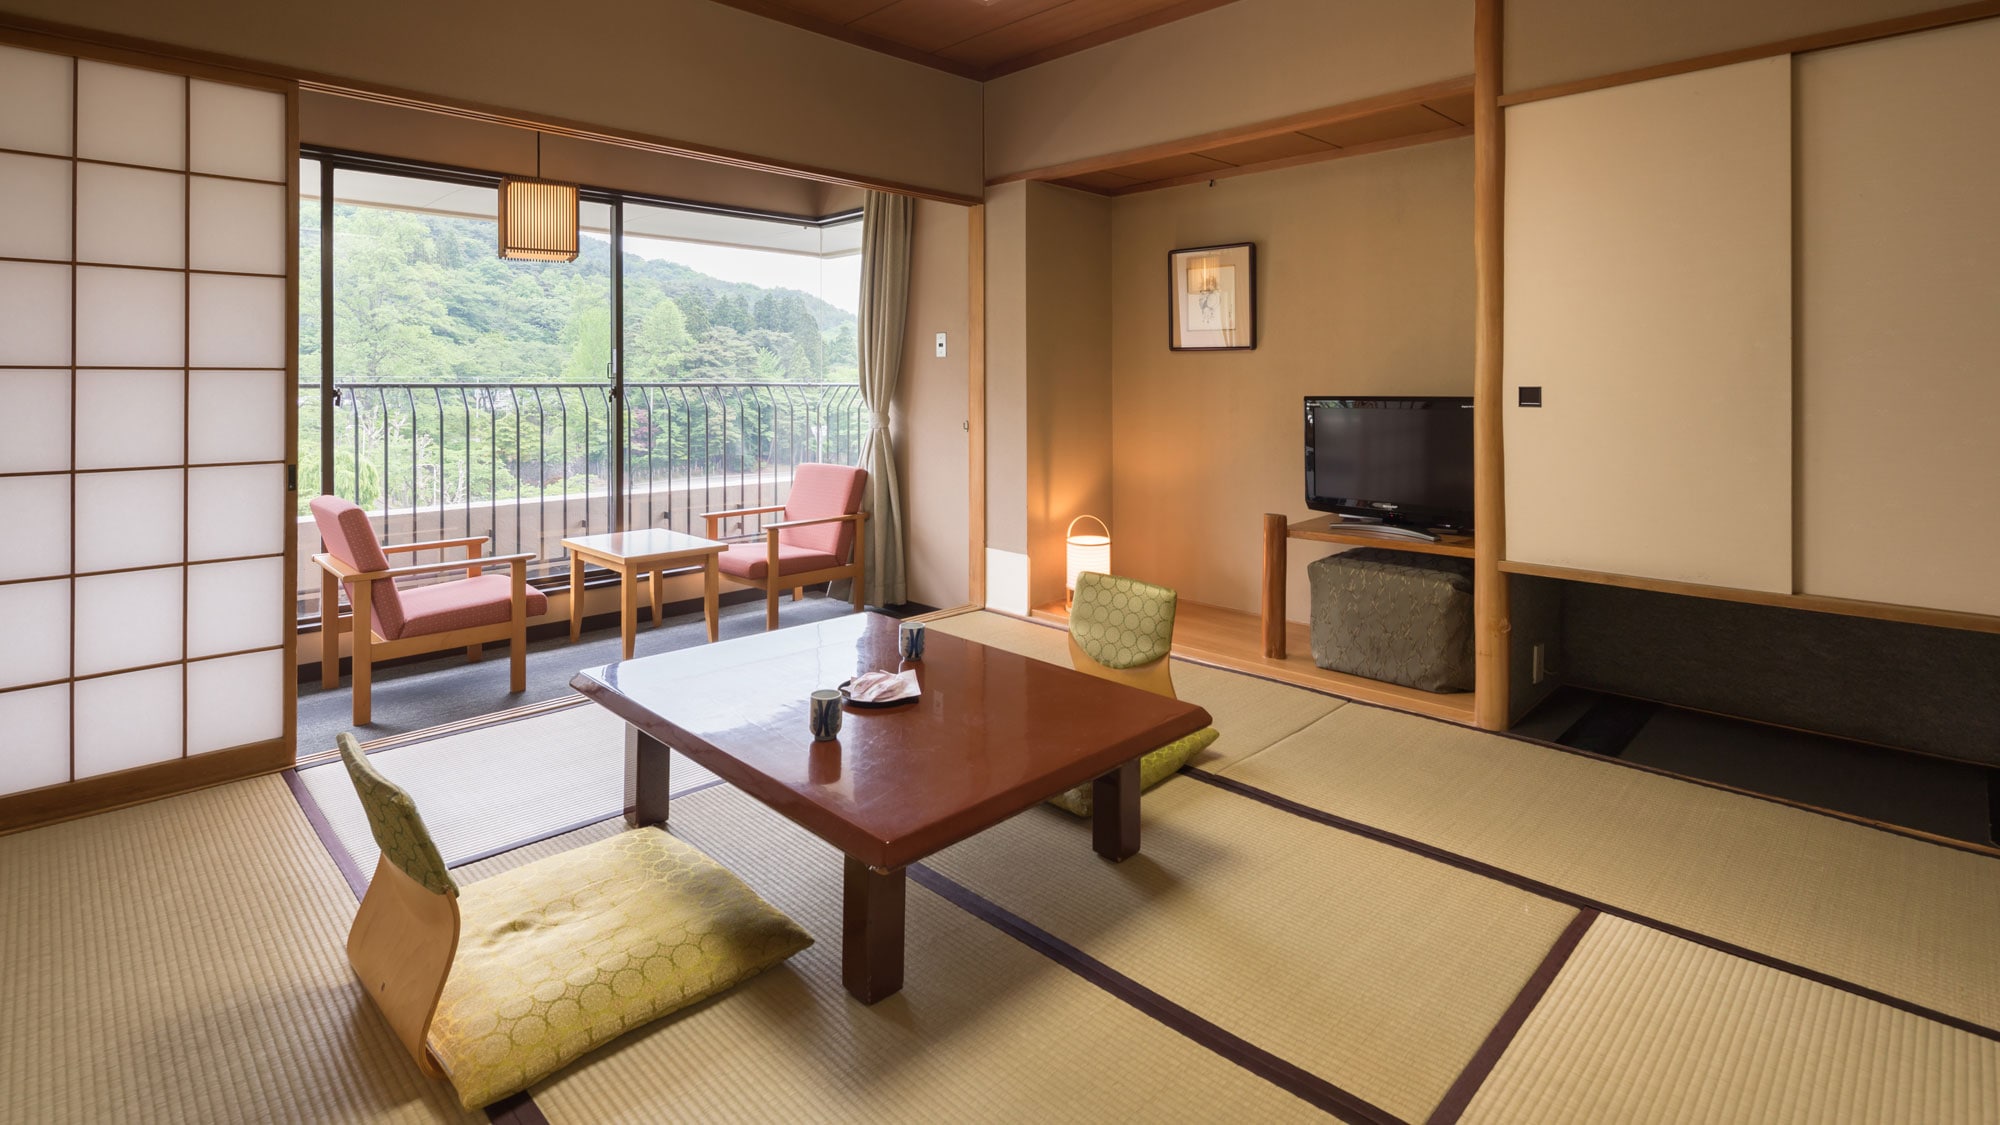 [ห้องสไตล์ญี่ปุ่น 8 เสื่อ] แนะนำสำหรับคู่รักและกลุ่มเล็ก อ่างอาบน้ำ ห้องสุขาพร้อมเครื่องซักผ้า บริการเชื่อมต่อ Wi-Fi ฟรี